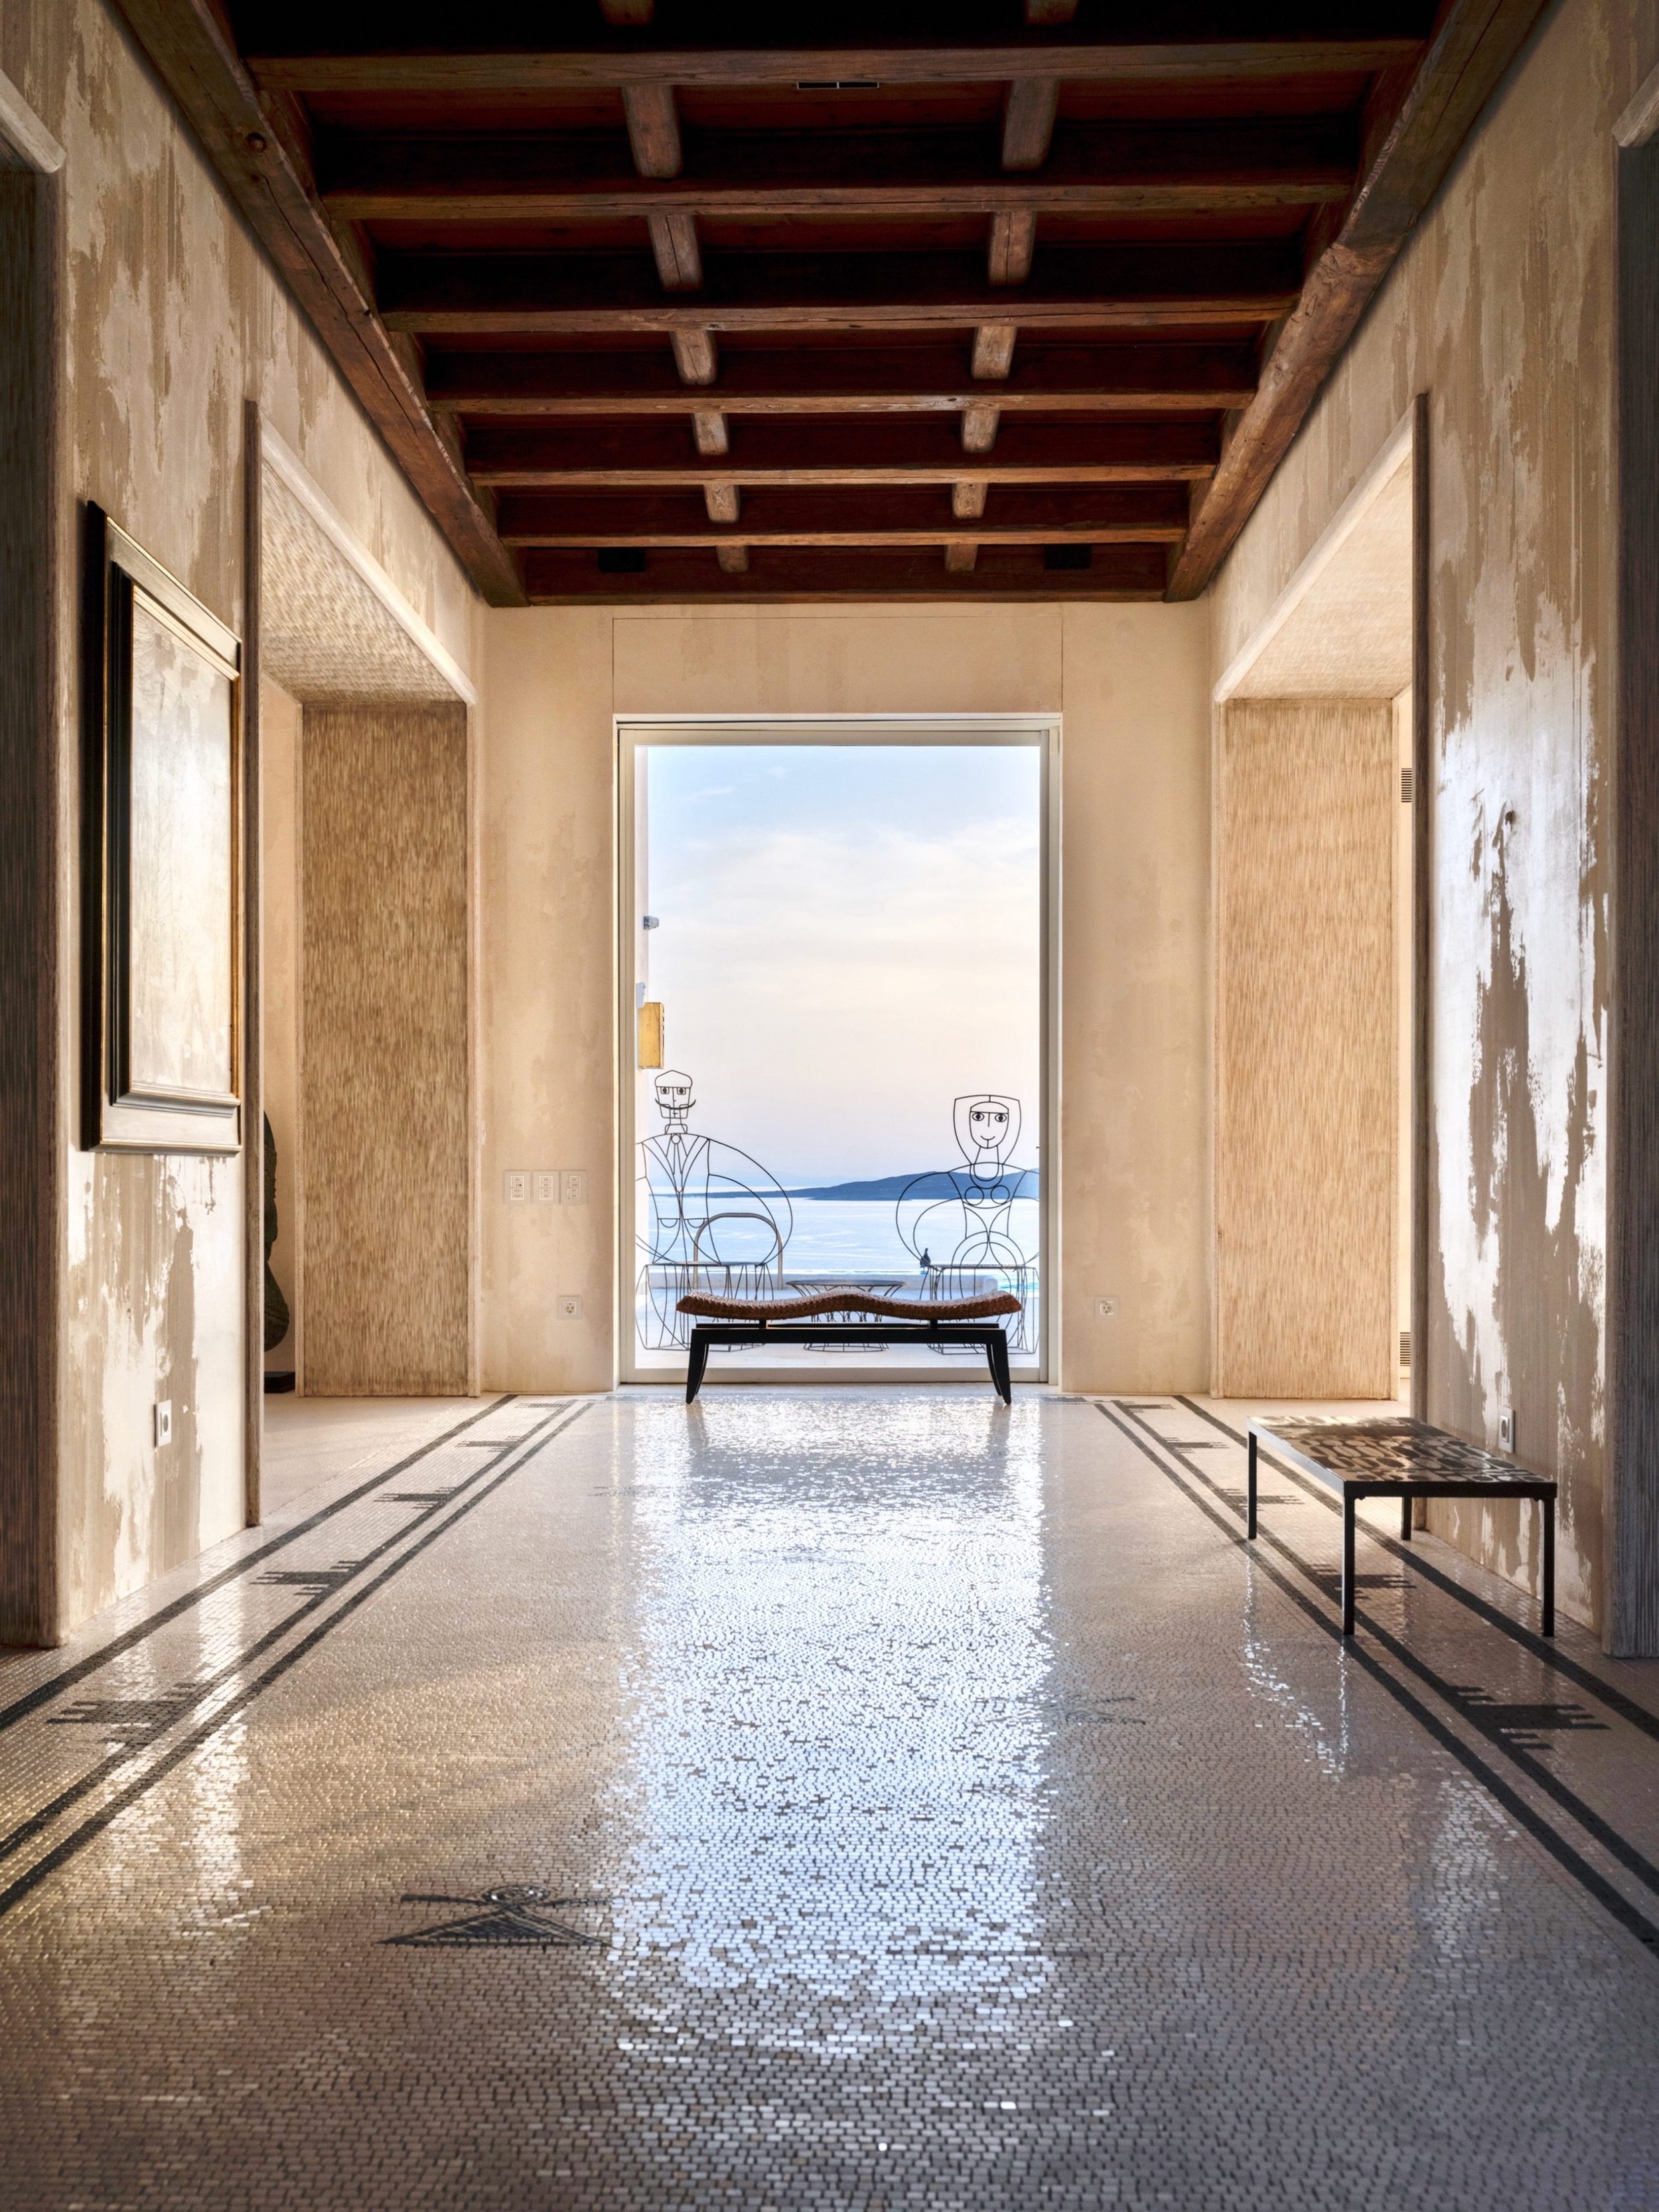 Francis York Luxury Villa For Sale in Mykonos, Greece 7.jpg